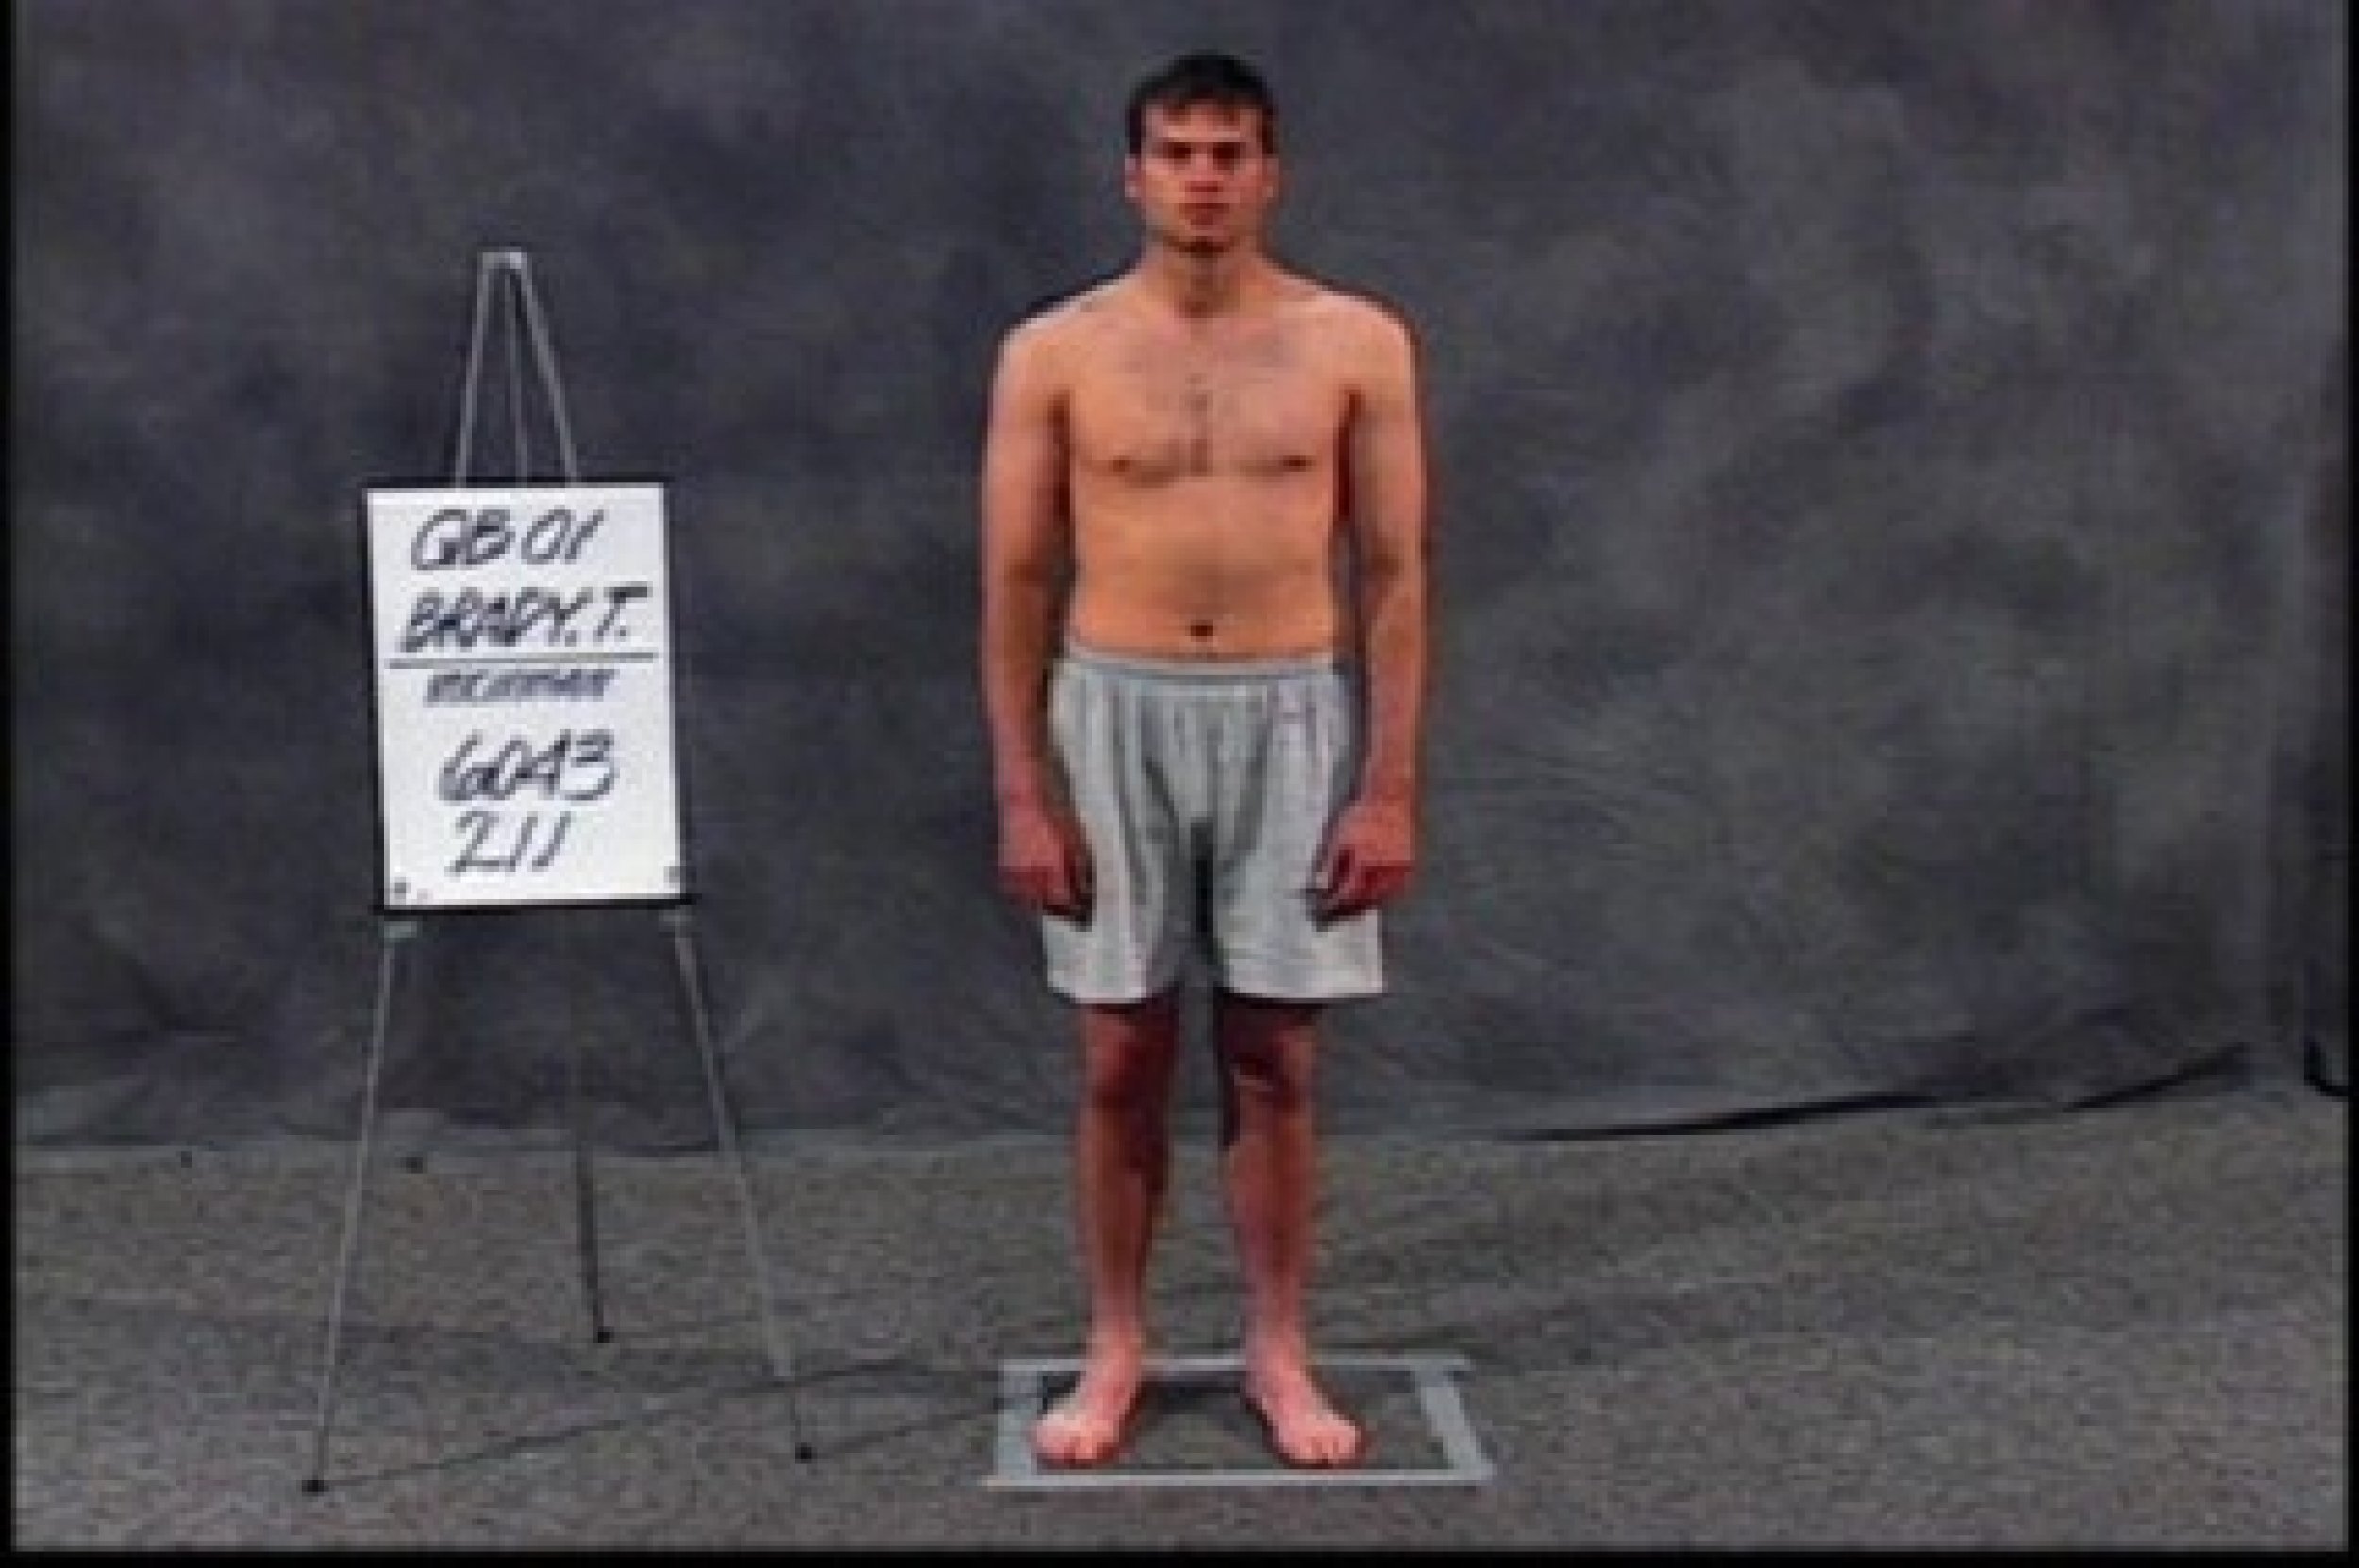 Tom Brady in the NFL